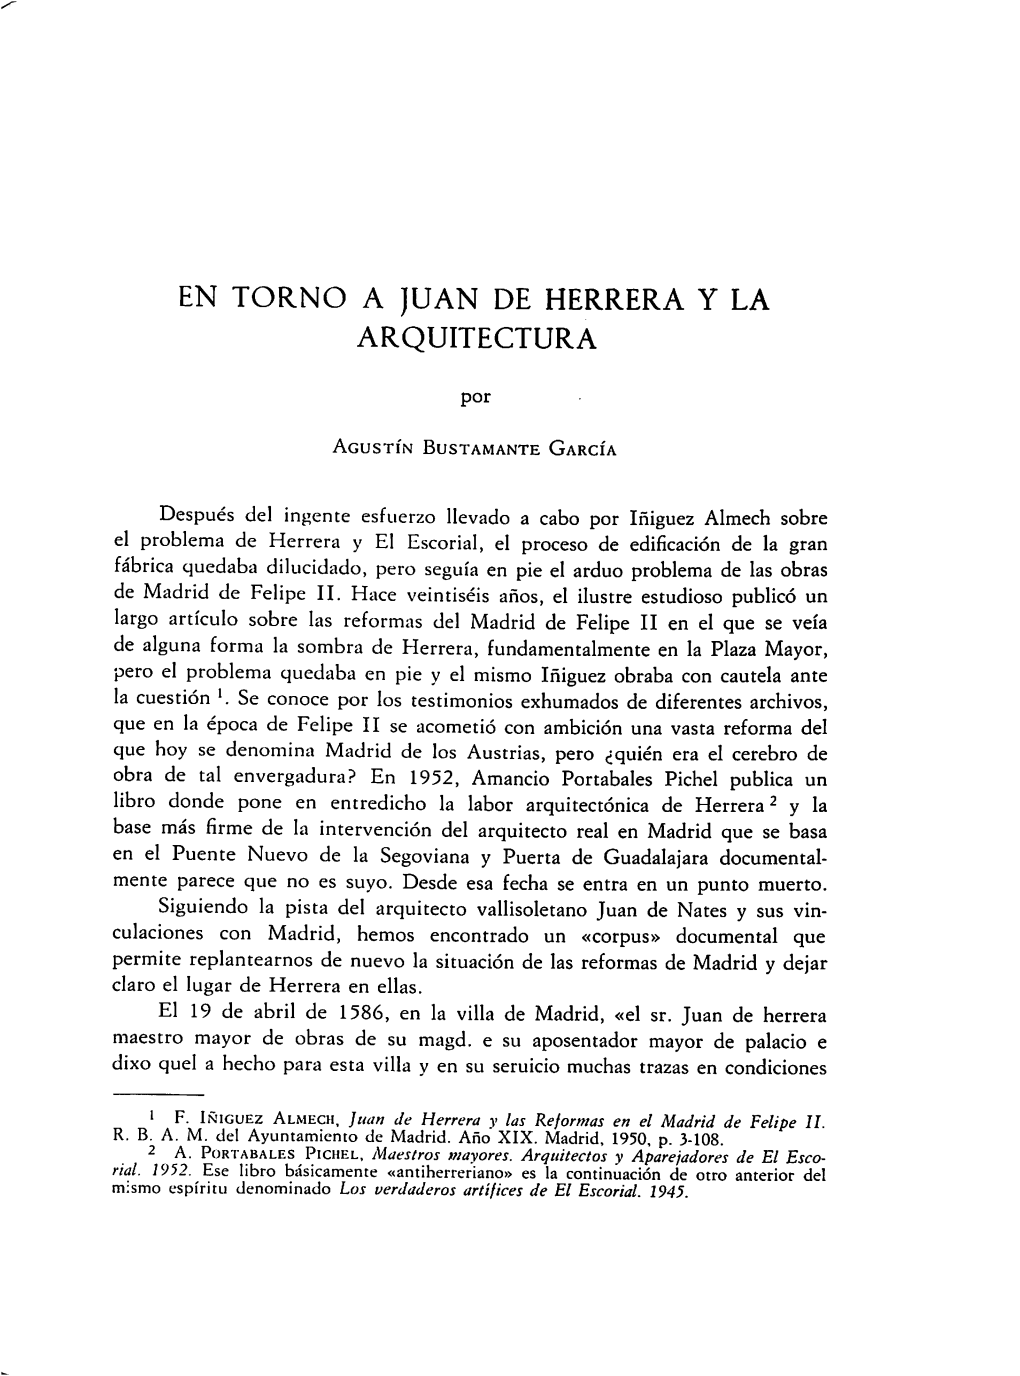 En Torno a Juan De Herrera Y La Arquitectura